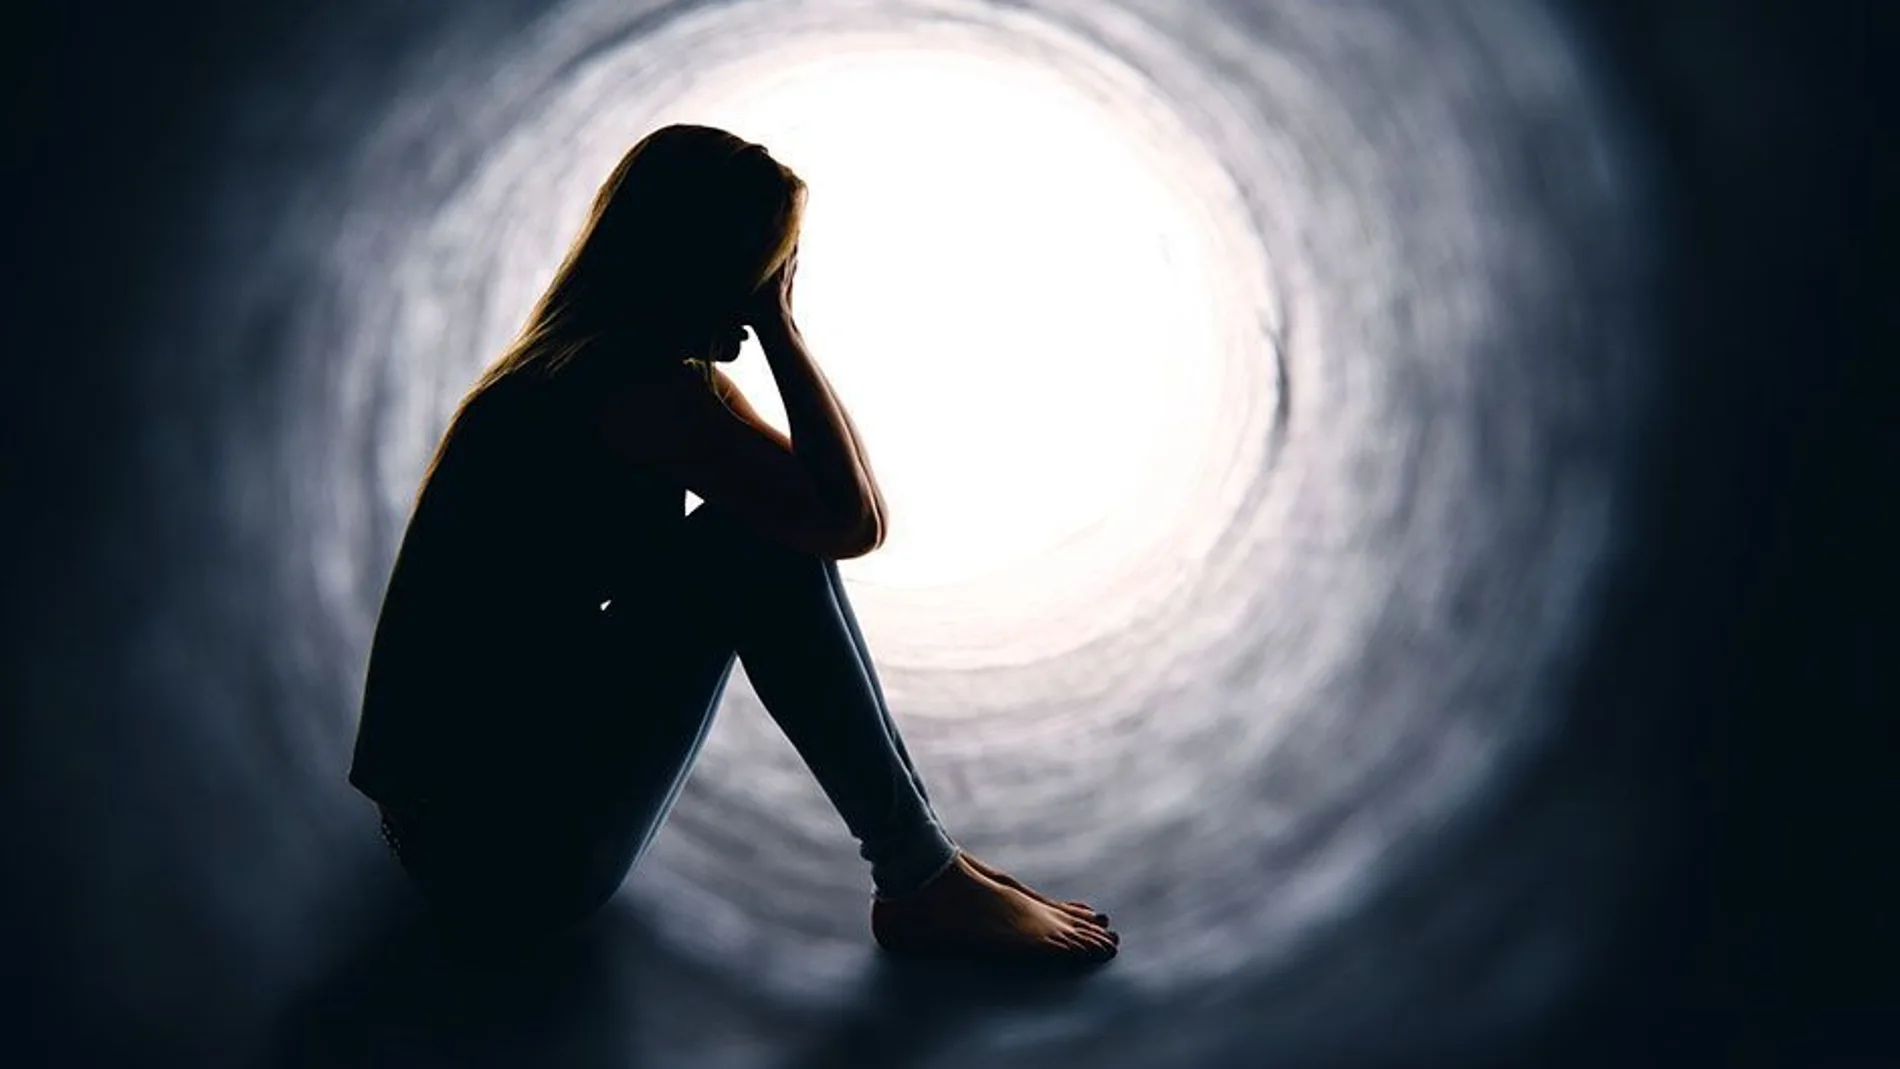 Las fotos de Instagram predicen la depresión mejor que los psiquiatras